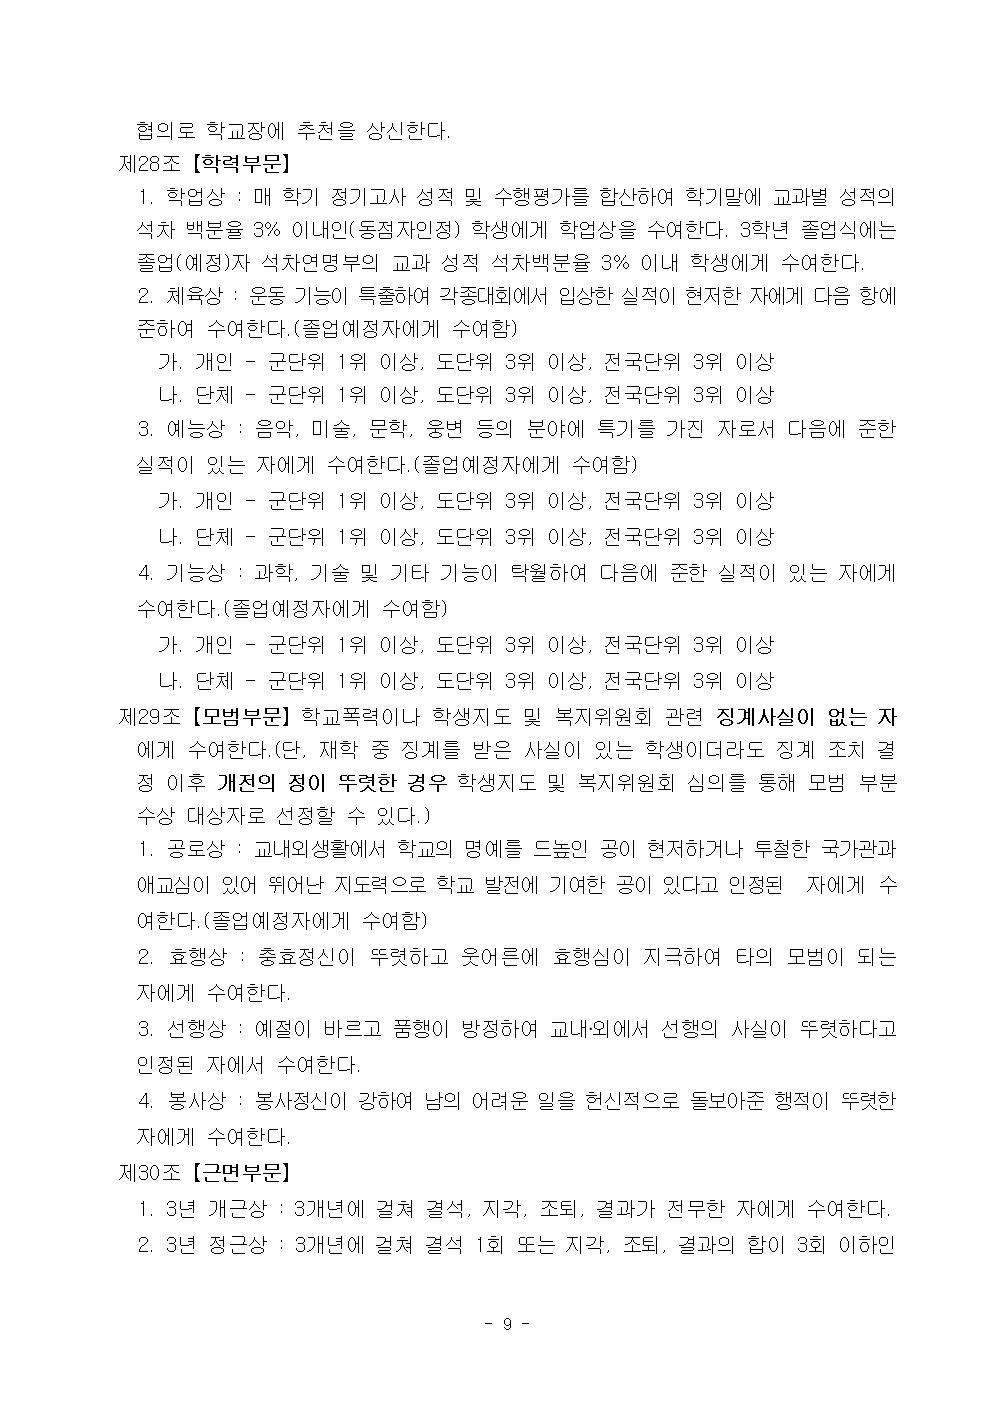 2022학년도 광혜원중학교 학생생활규정010